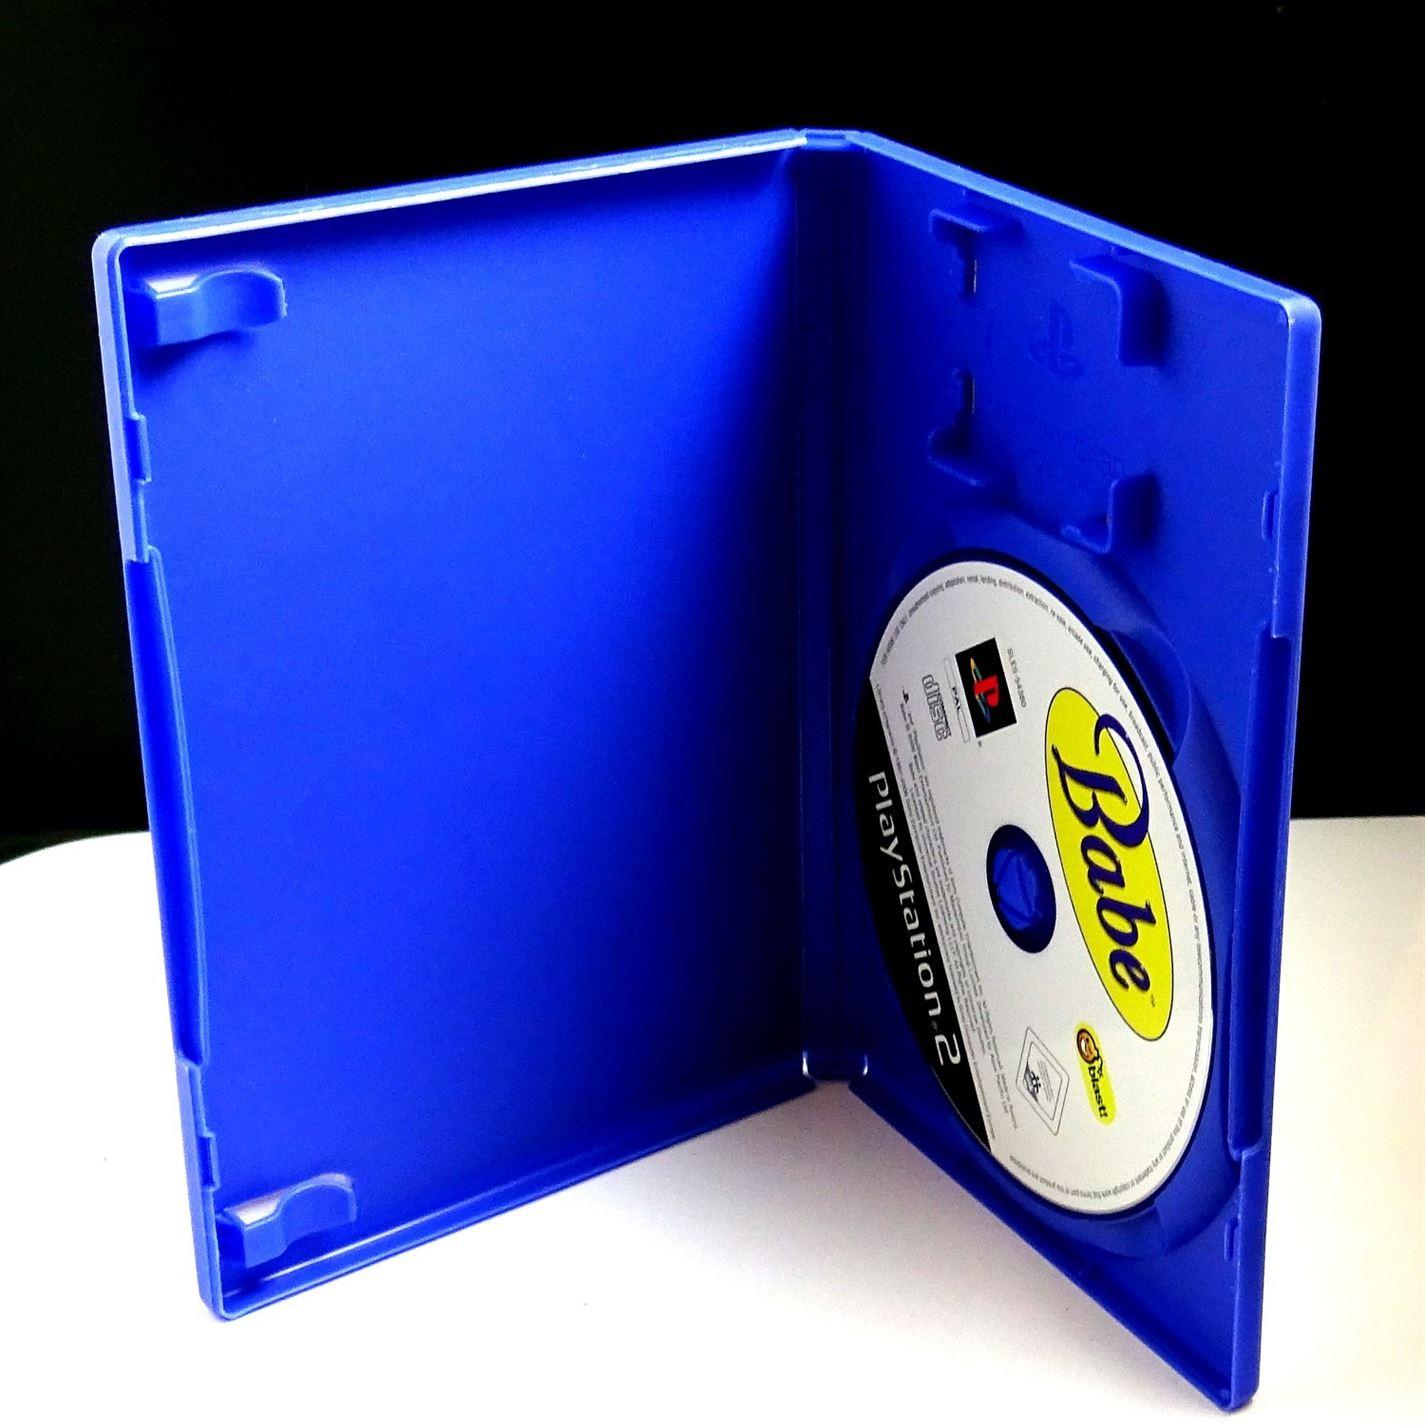 Babe PS2 (PlayStation 2) - UK Seller